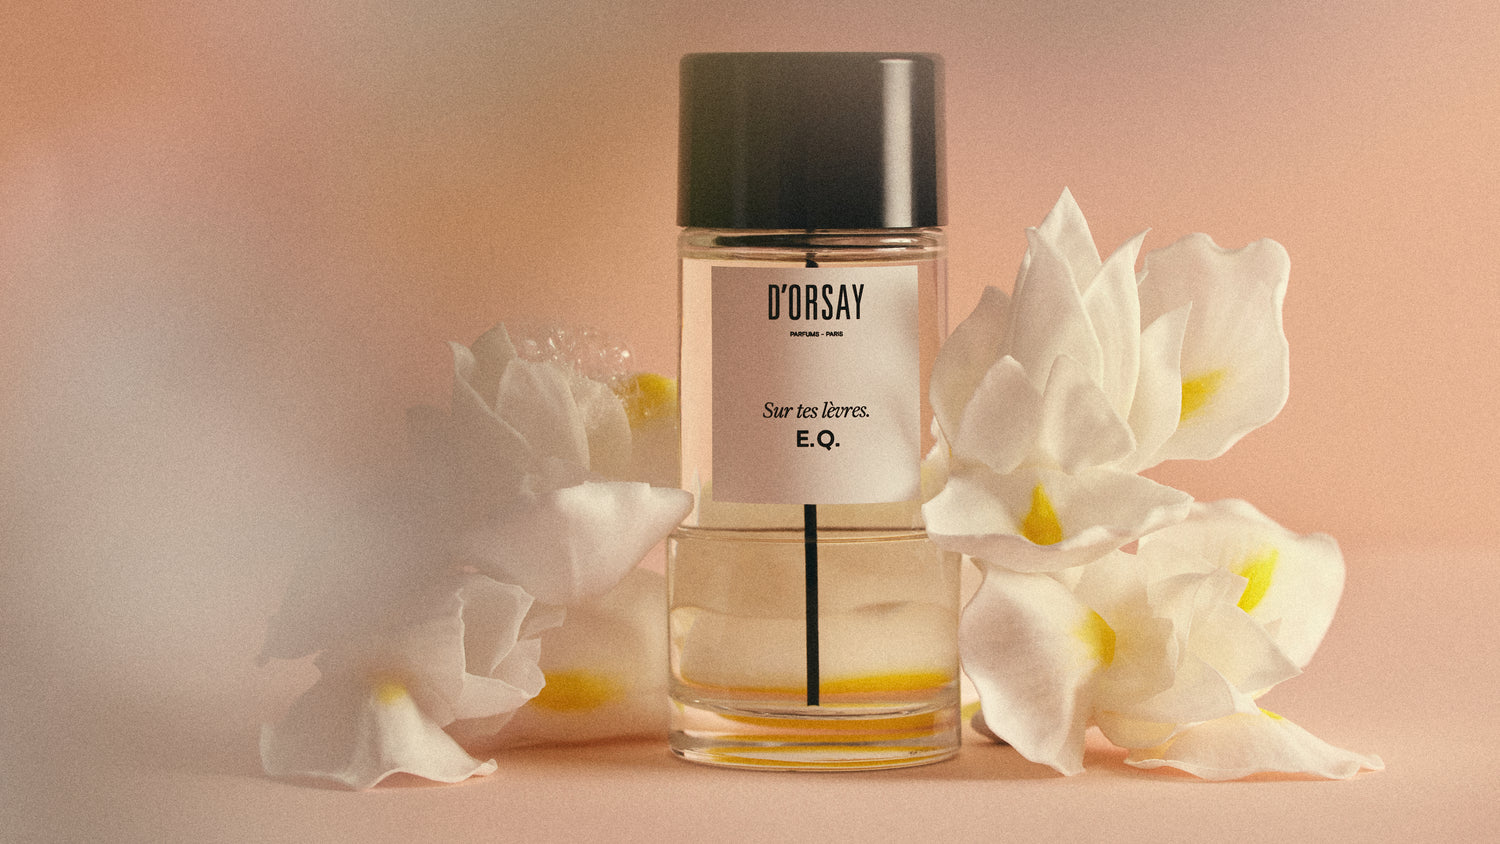 Un Floral, Musqué, évoquant l'amour infini, imaginé tel le prolongement d'un baiser par le maître parfumeur Dominique Ropion pour D'ORSAY.